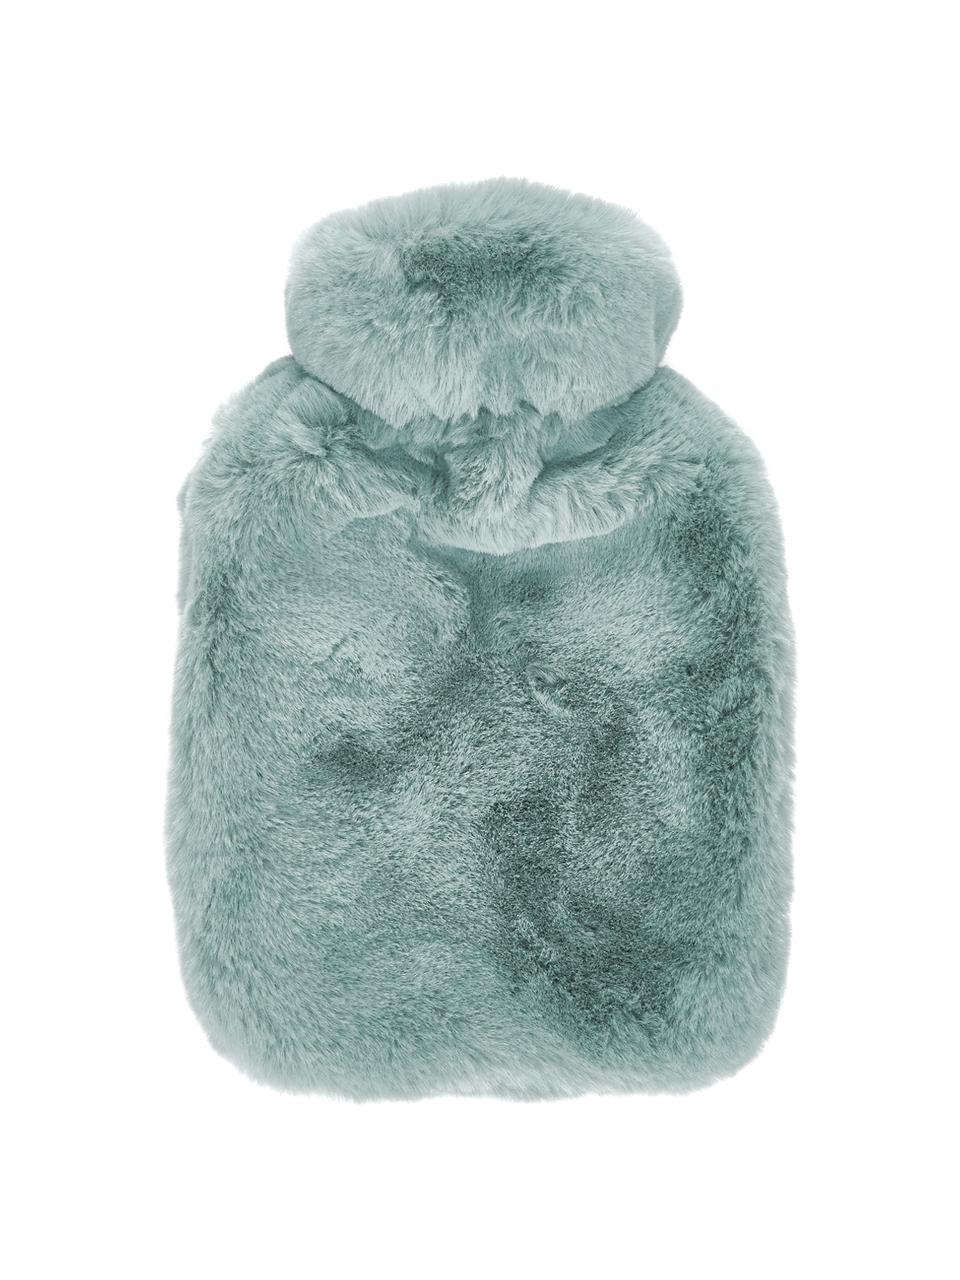 Borsa dell'acqua calda in pelliccia sintetica Mette, Rivestimento: 100% poliestere, Verde, Larg. 20 x Lung. 32 cm